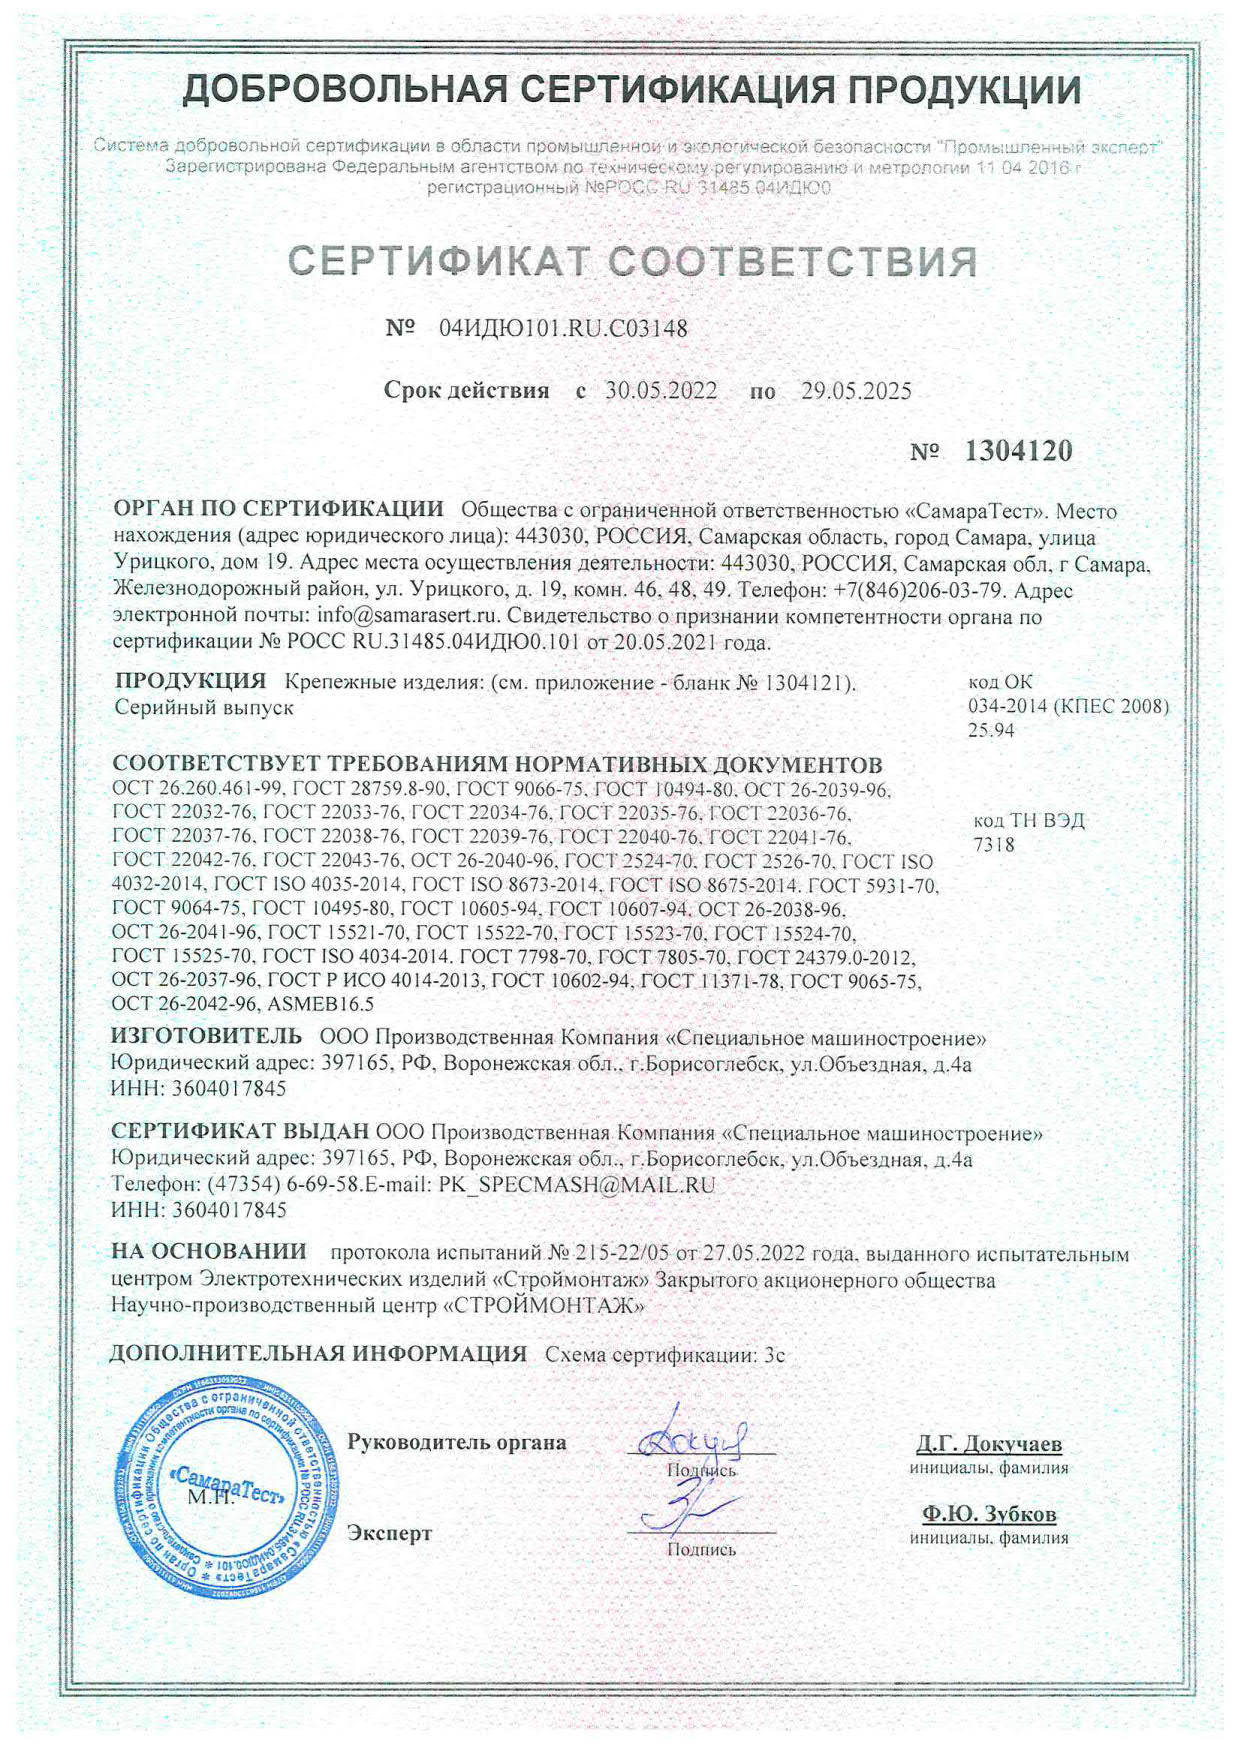 Сертификат соответствия на крепежные изделия (новый)-1_1